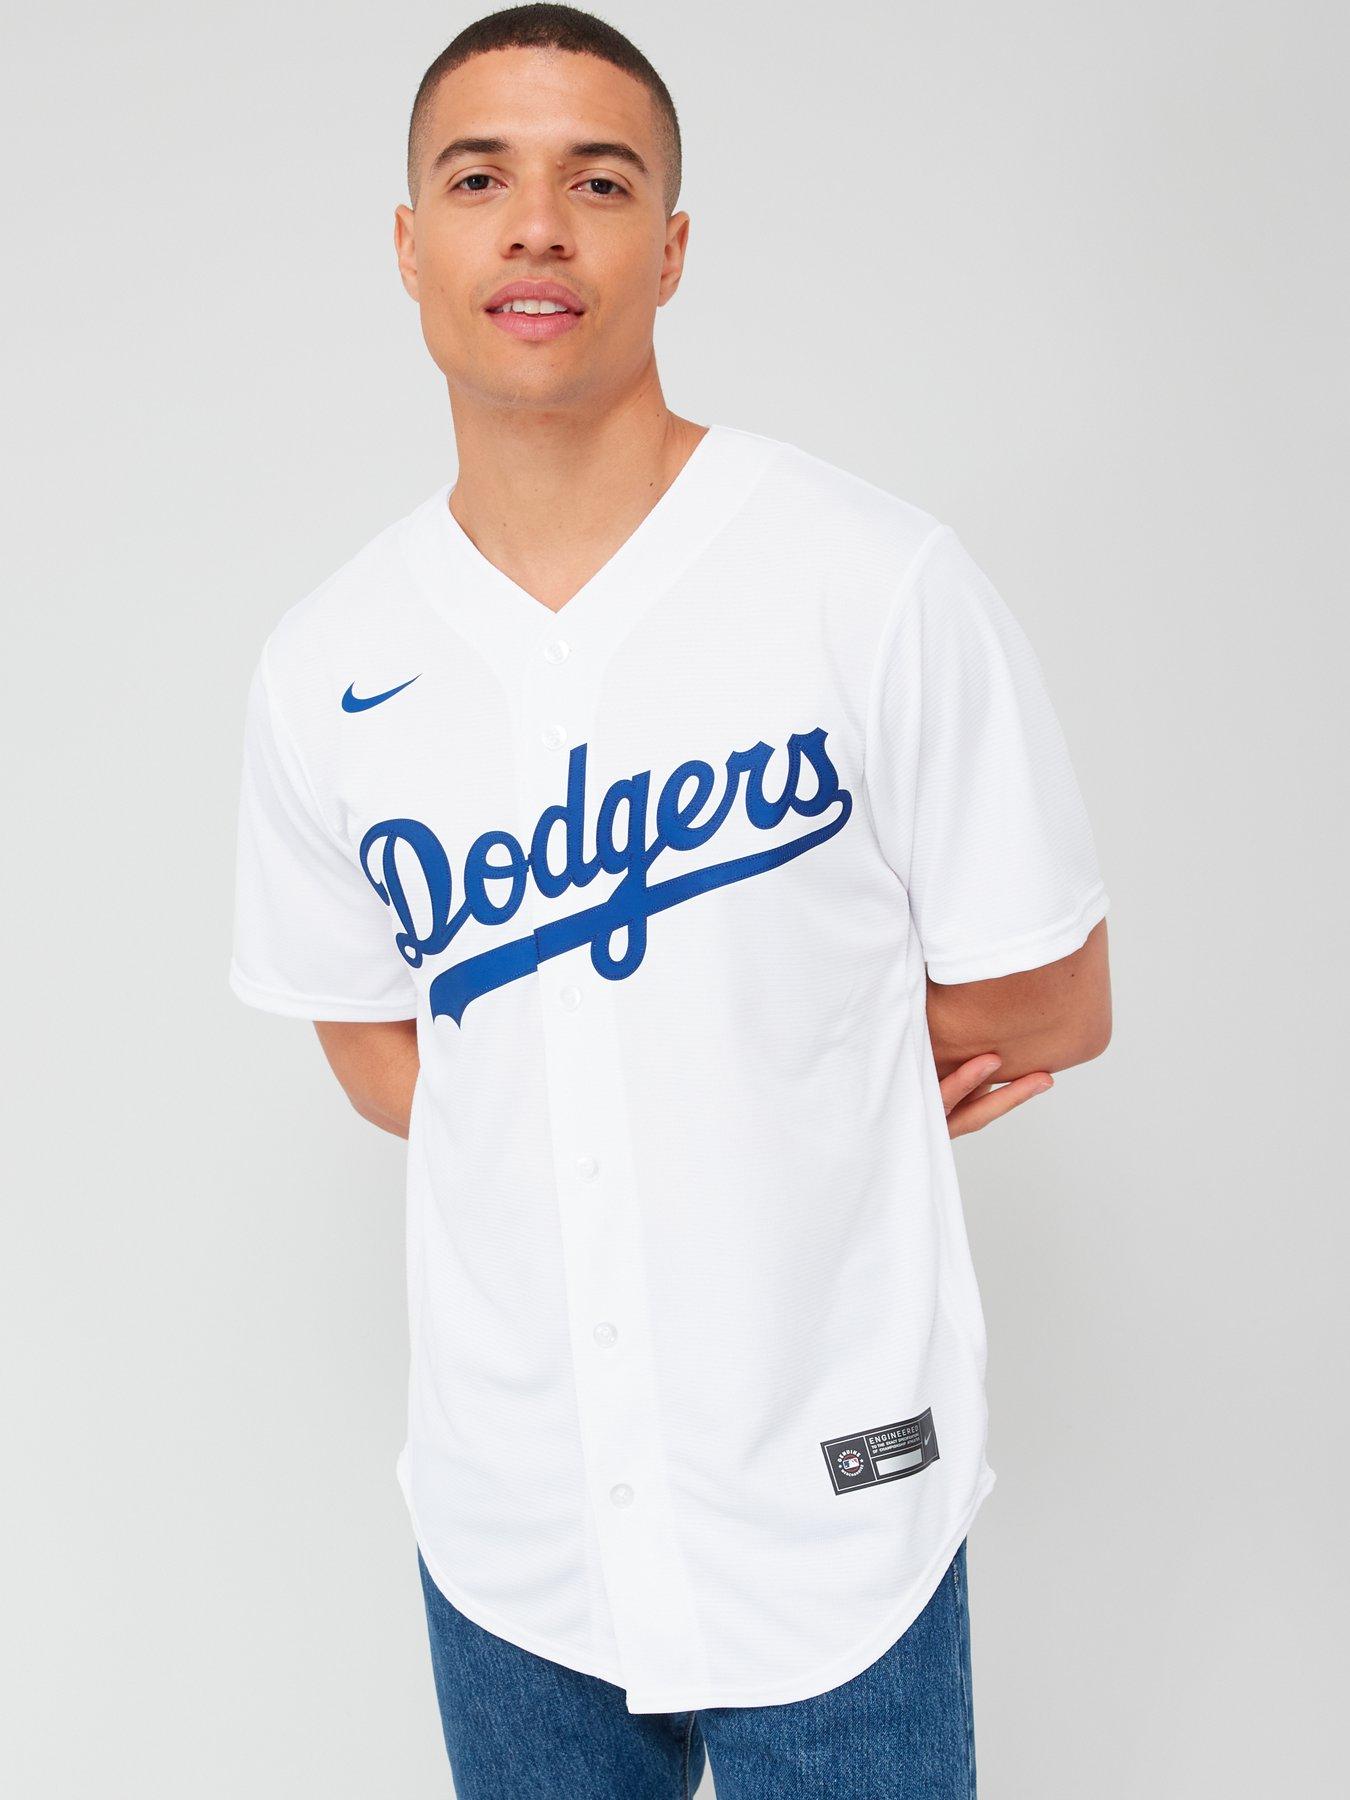 La Dodgers Nike Replica Home Jersey - White